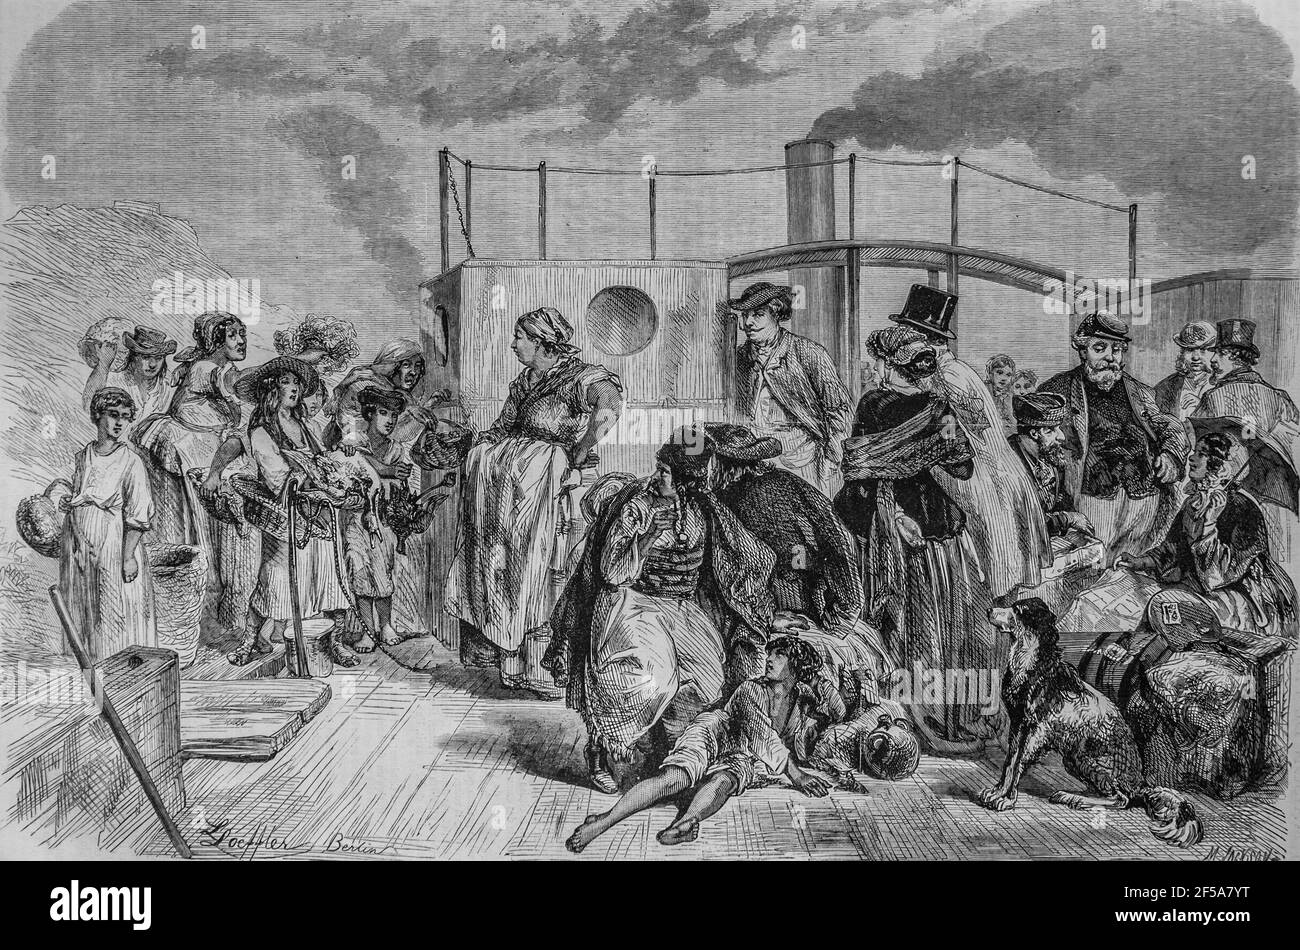 le pont d'un bateau a vapeur sur le danube, l'univers illustre,editeur michel levy 1868 Foto Stock